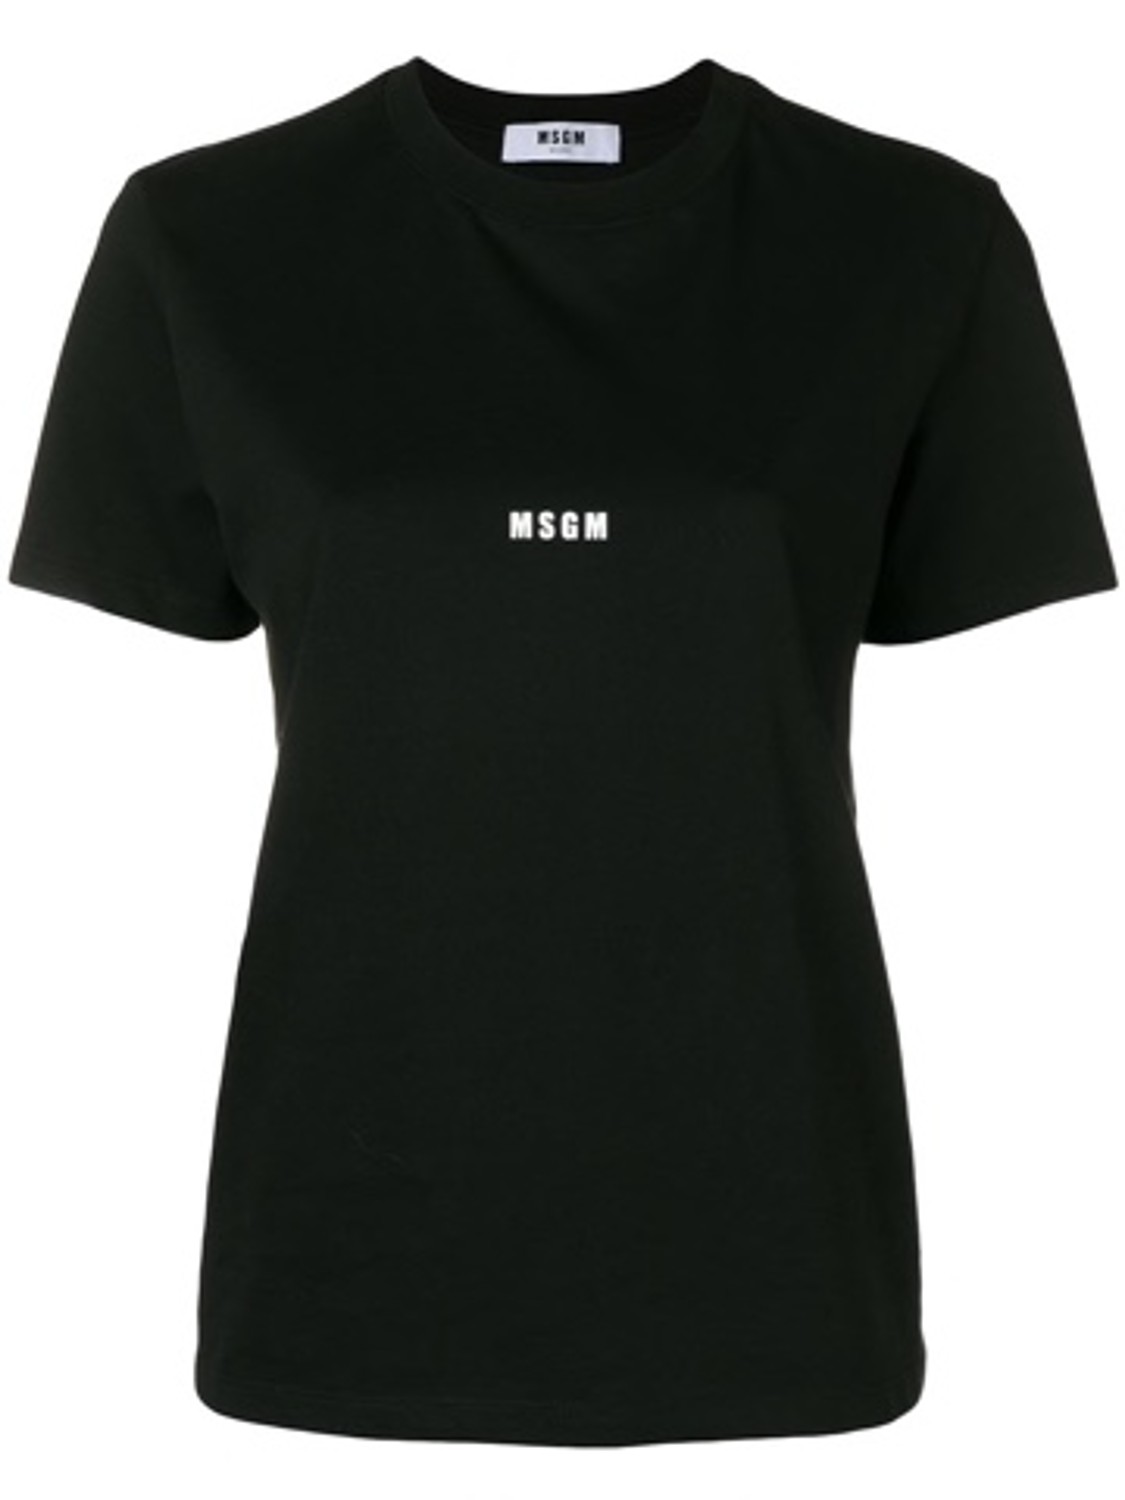 shop MSGM Sales T-shirts: T-shirt MSGM, modello regolare, girocollo, manica corta, logo sul davanti.

Composizione: 100% cotone. number 1407